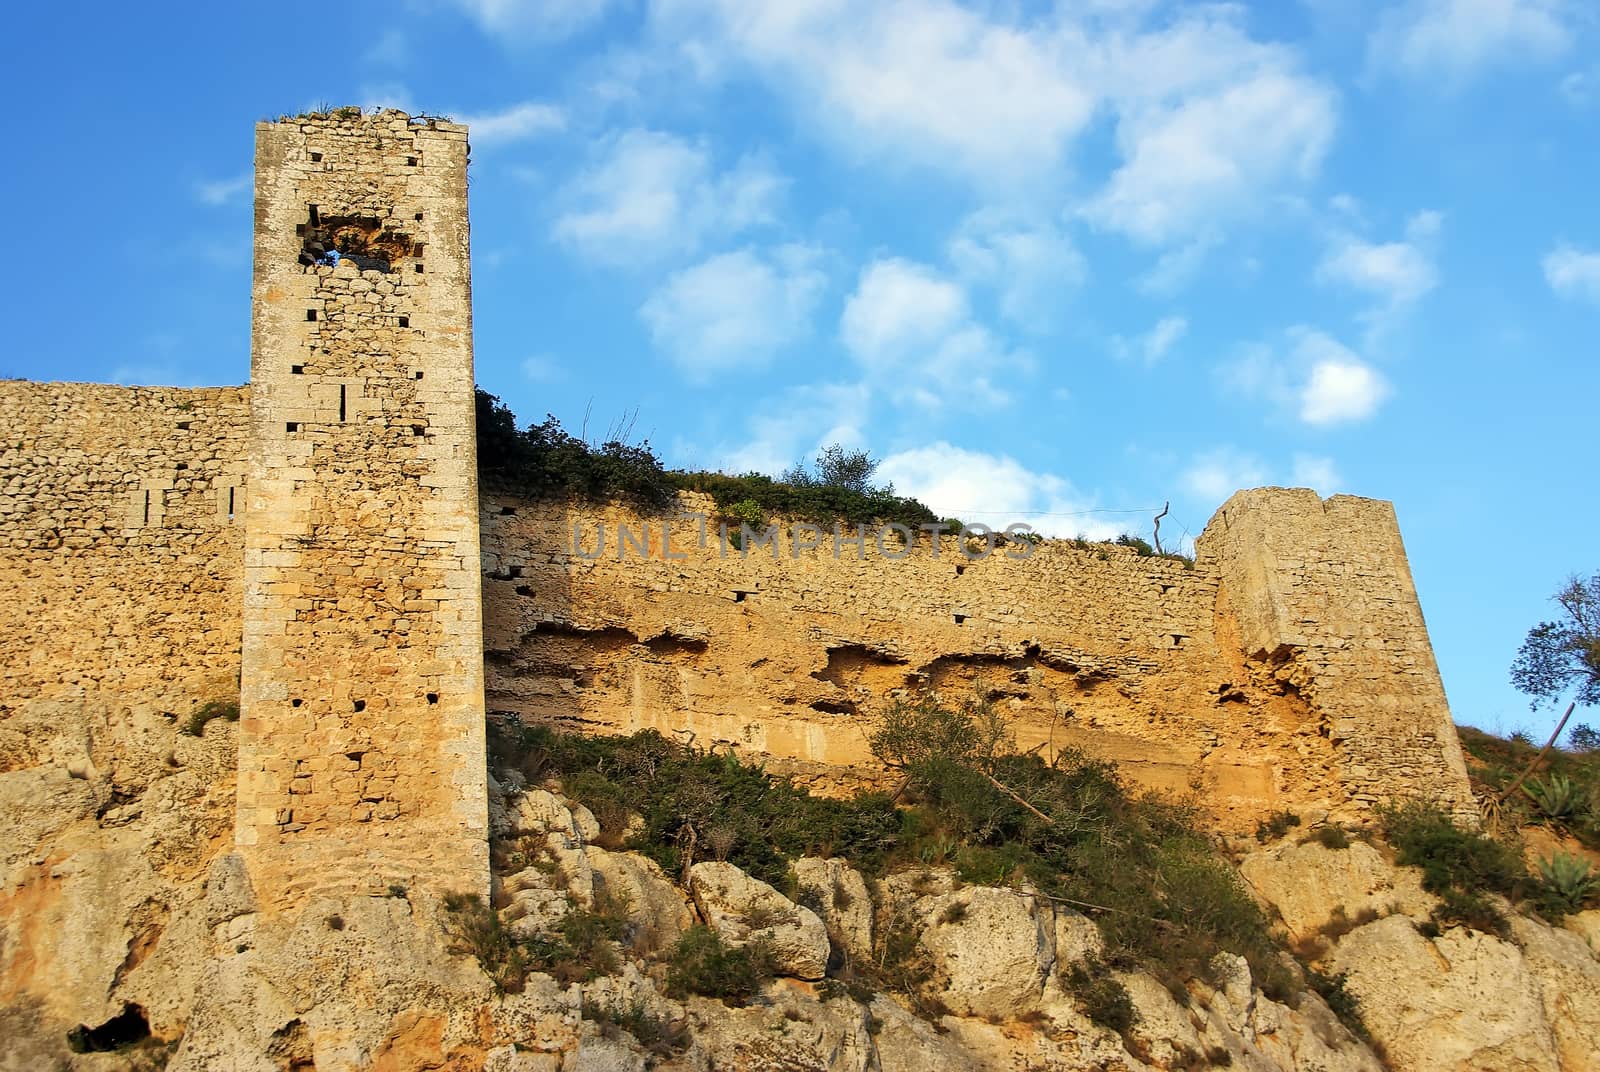 Santueri Castle by JCVSTOCK